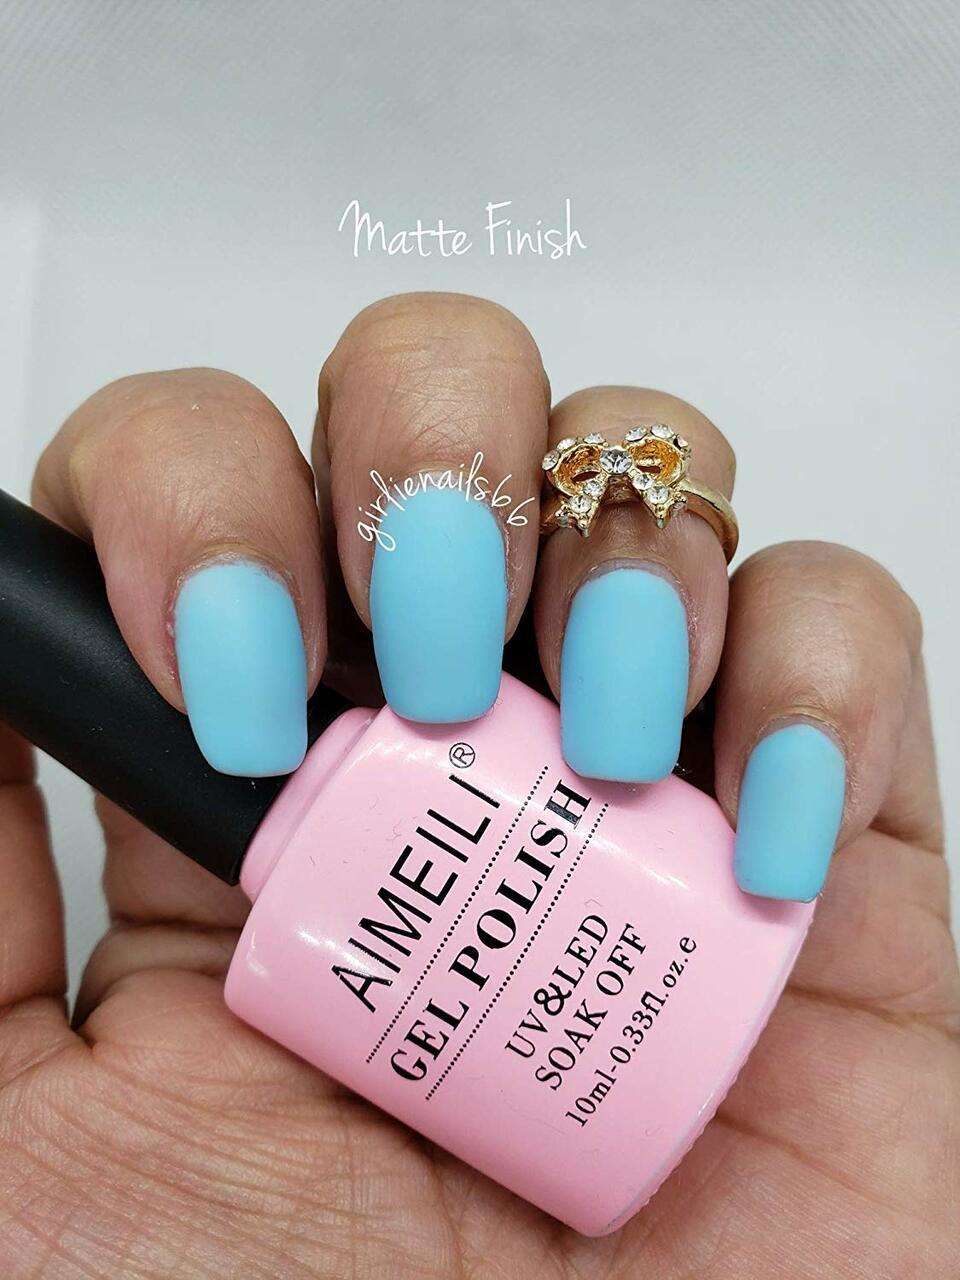 25 Cute Matte Nail Designs You Will Love - Pretty Designs | Blue matte nails,  Cute nails, Matte nails design